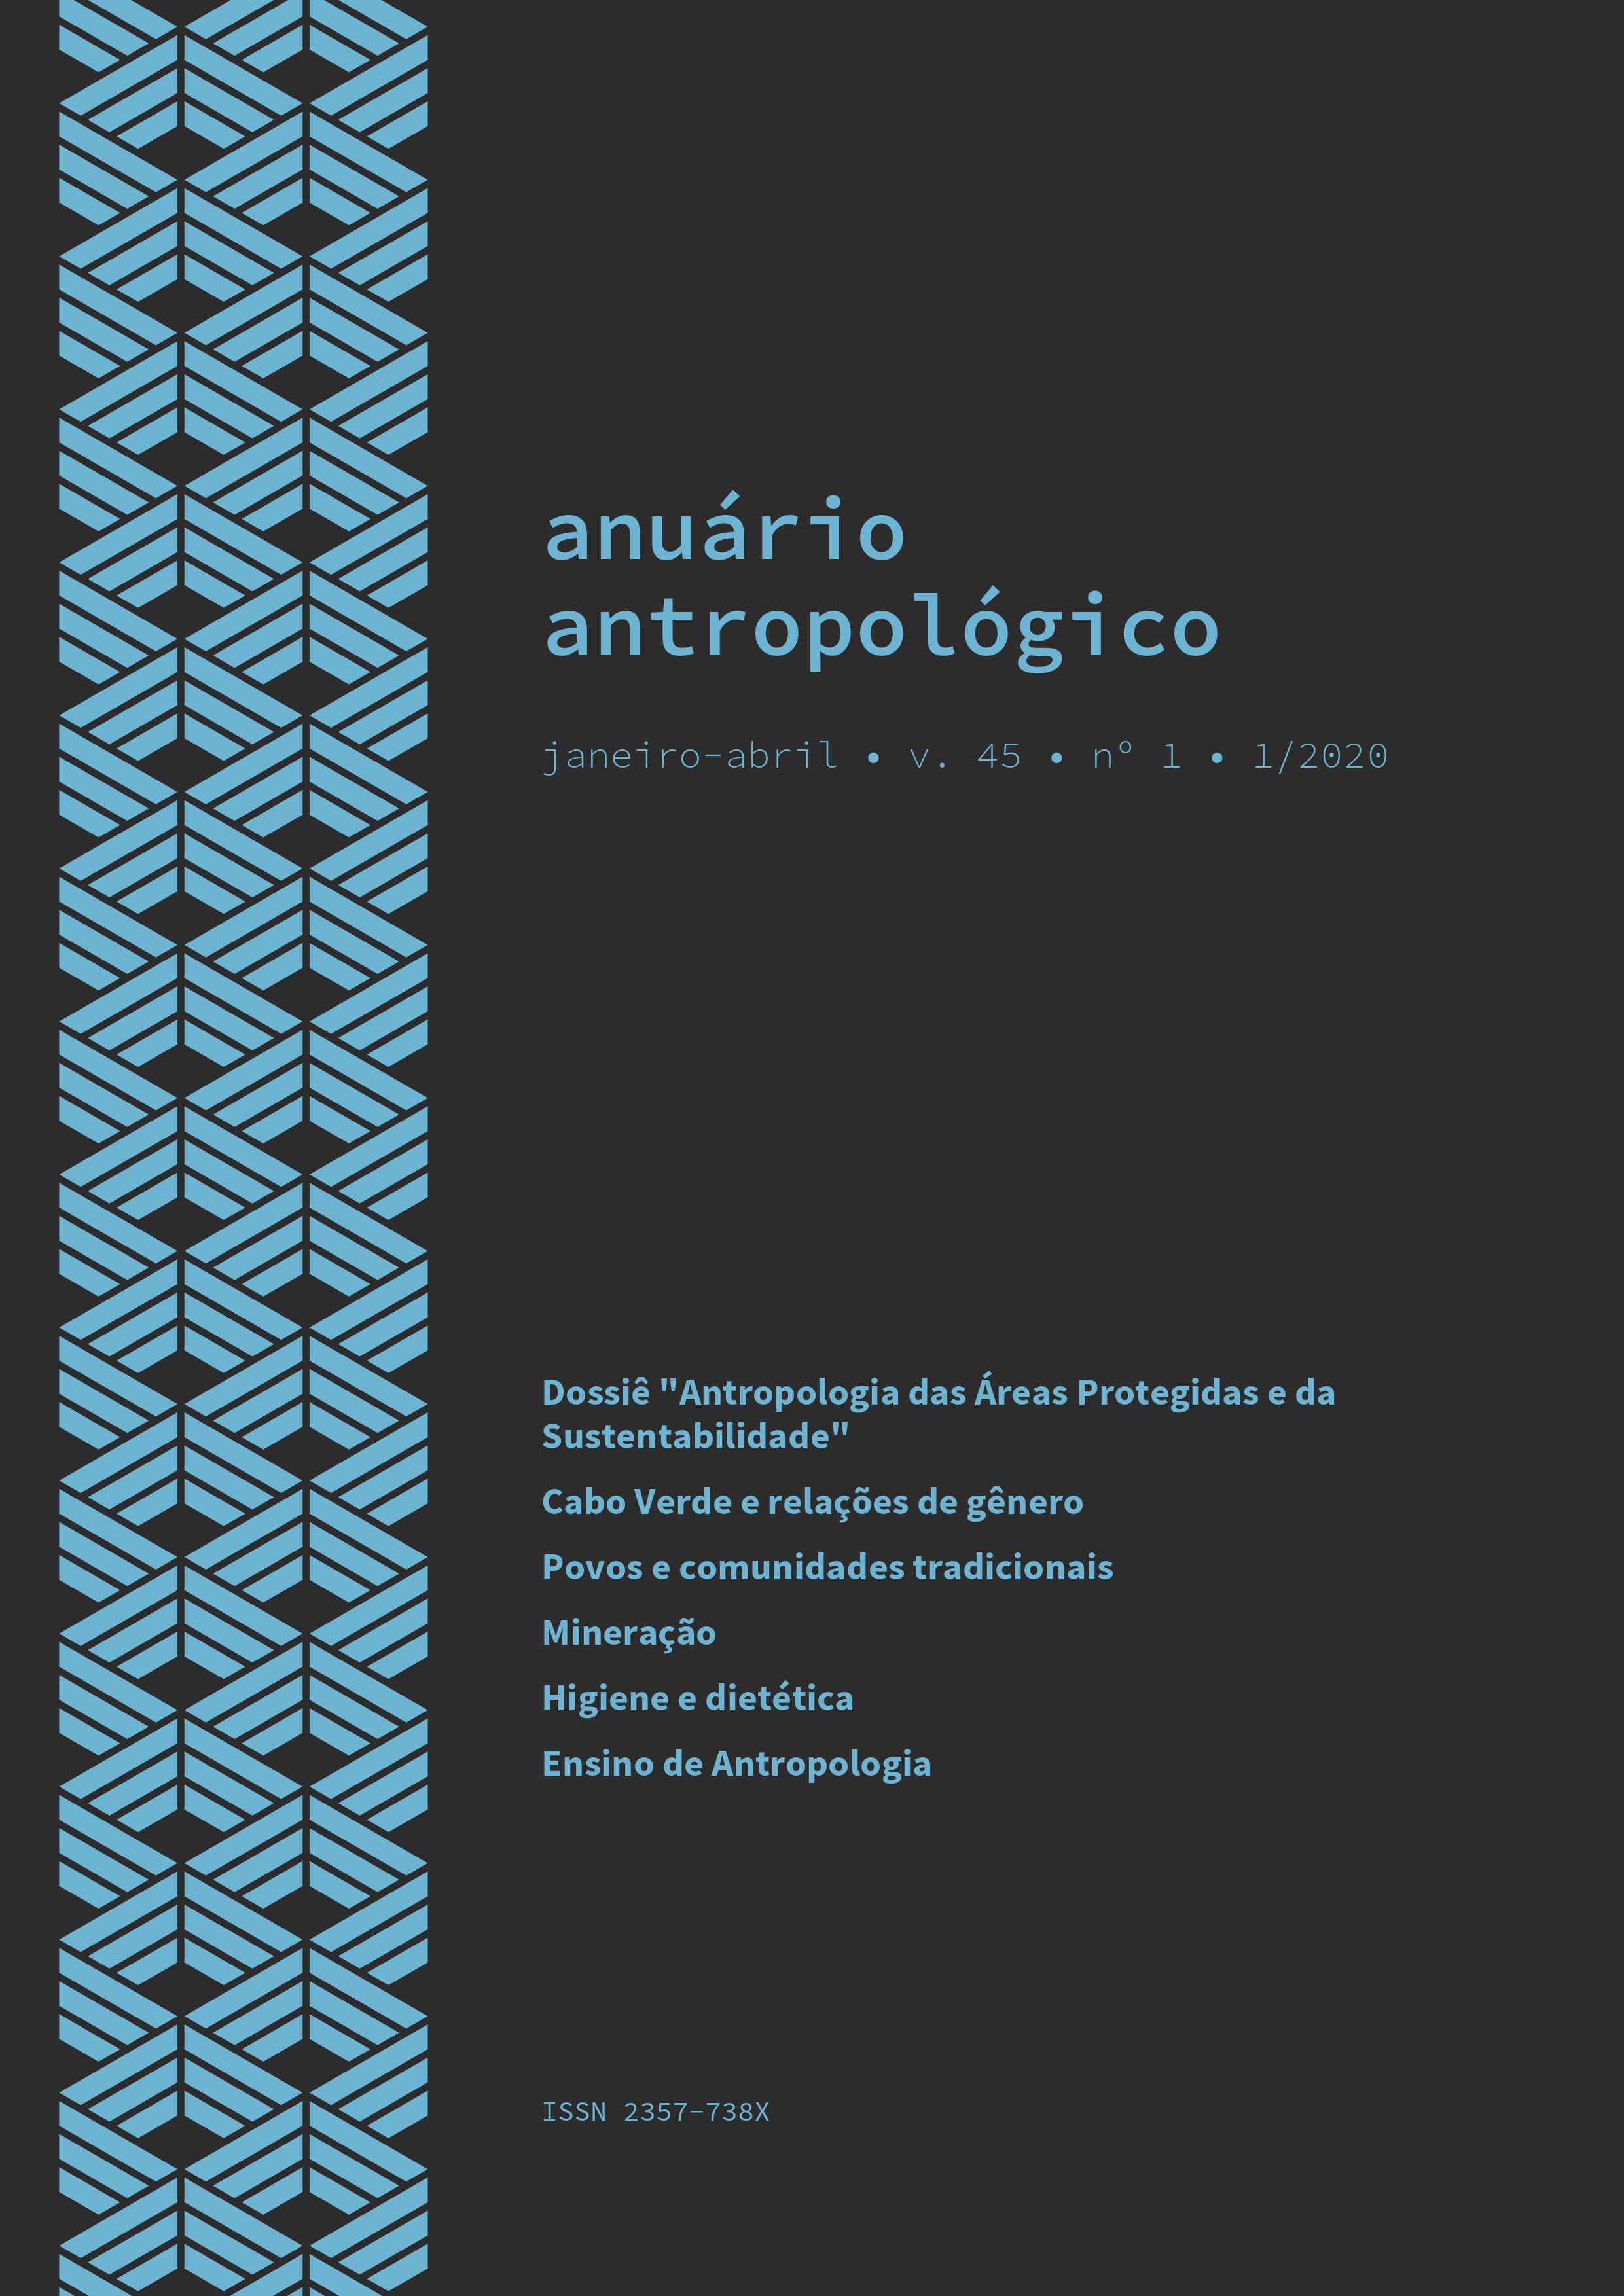 					Visualizar v. 45 n. 1 (2020): Anuário Antropológico
				